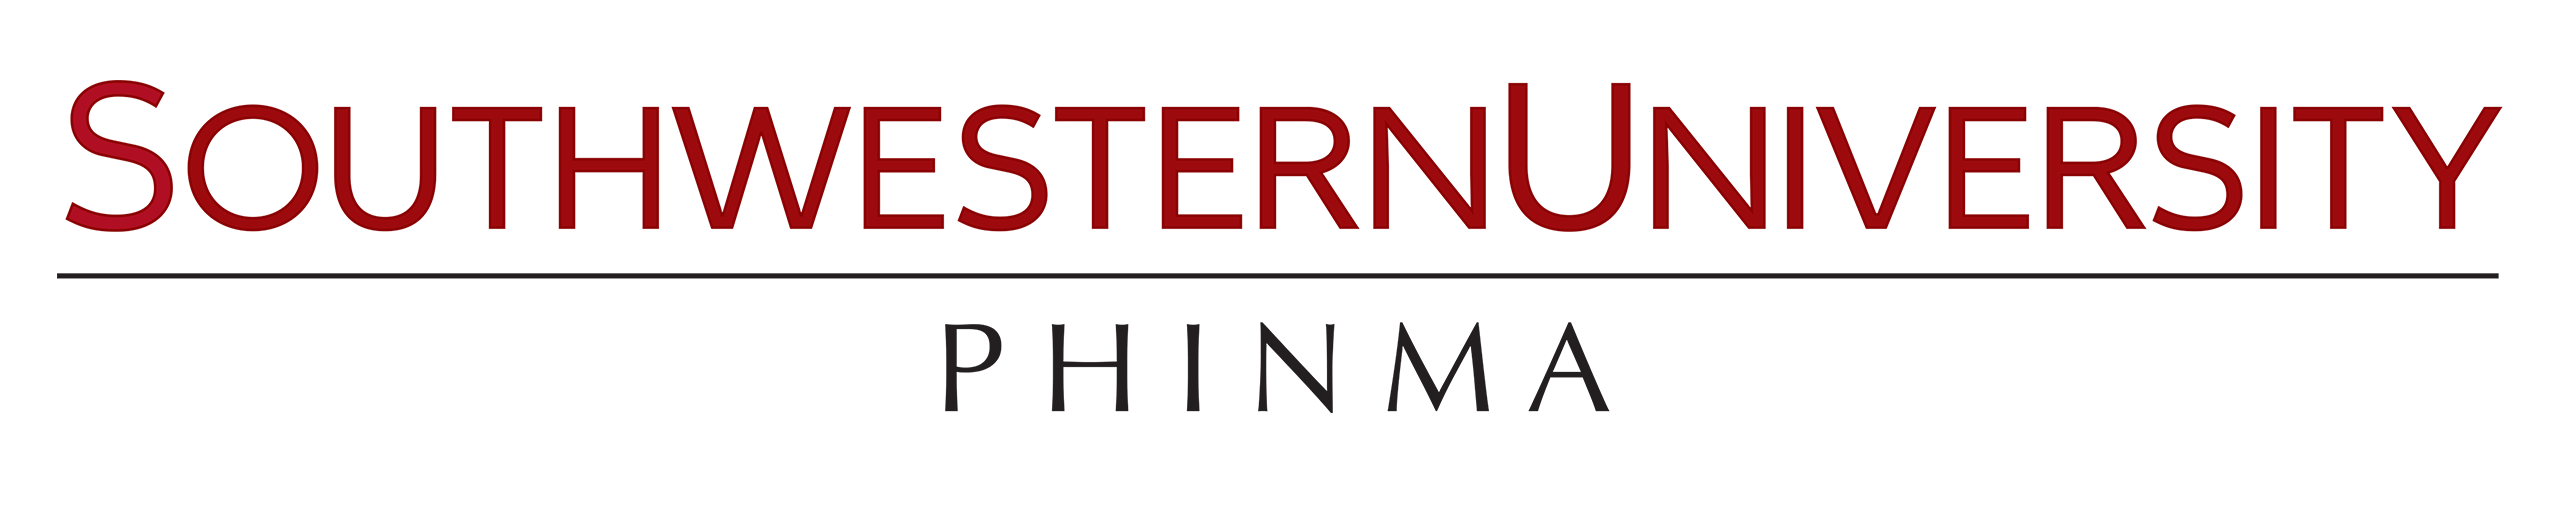 Southwestern University PHINMA Logo